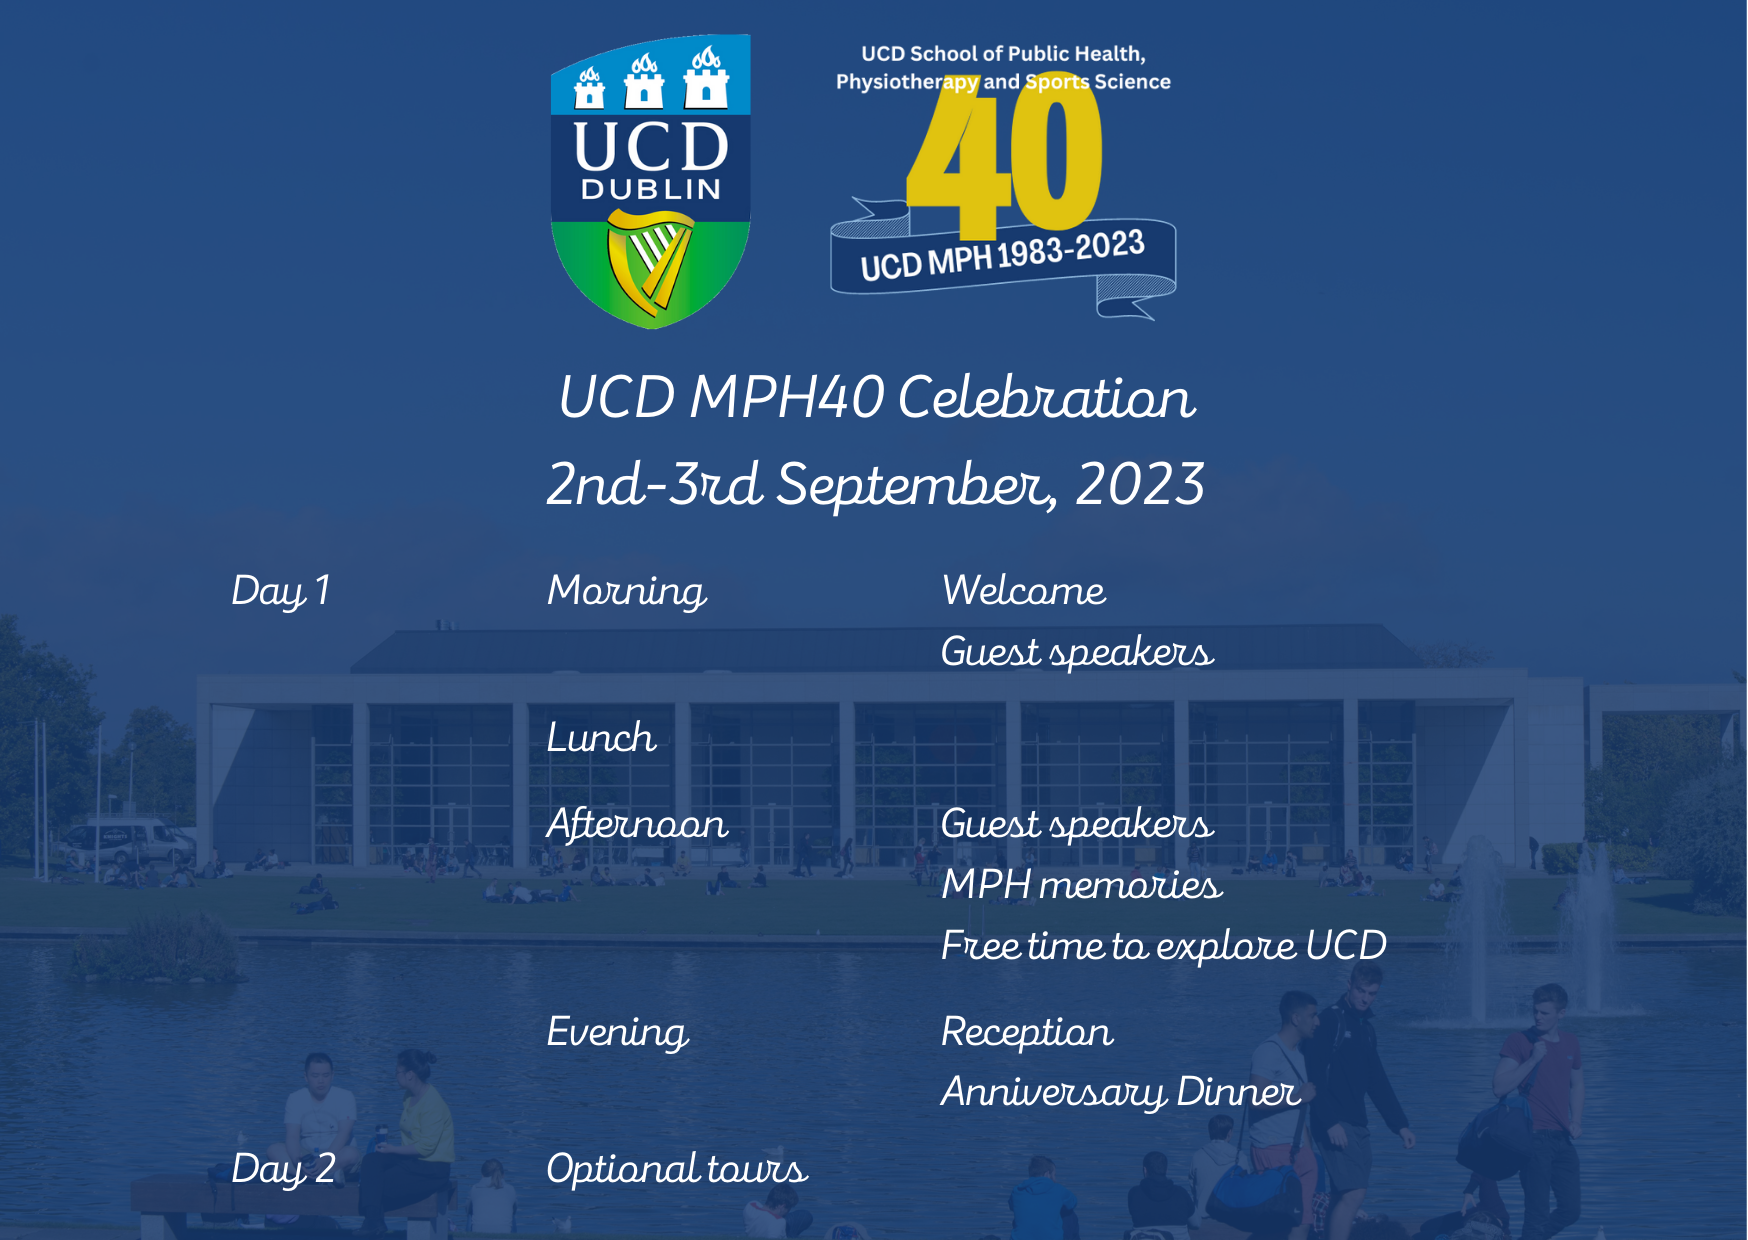 Image showing programme details for MHP40 celebration